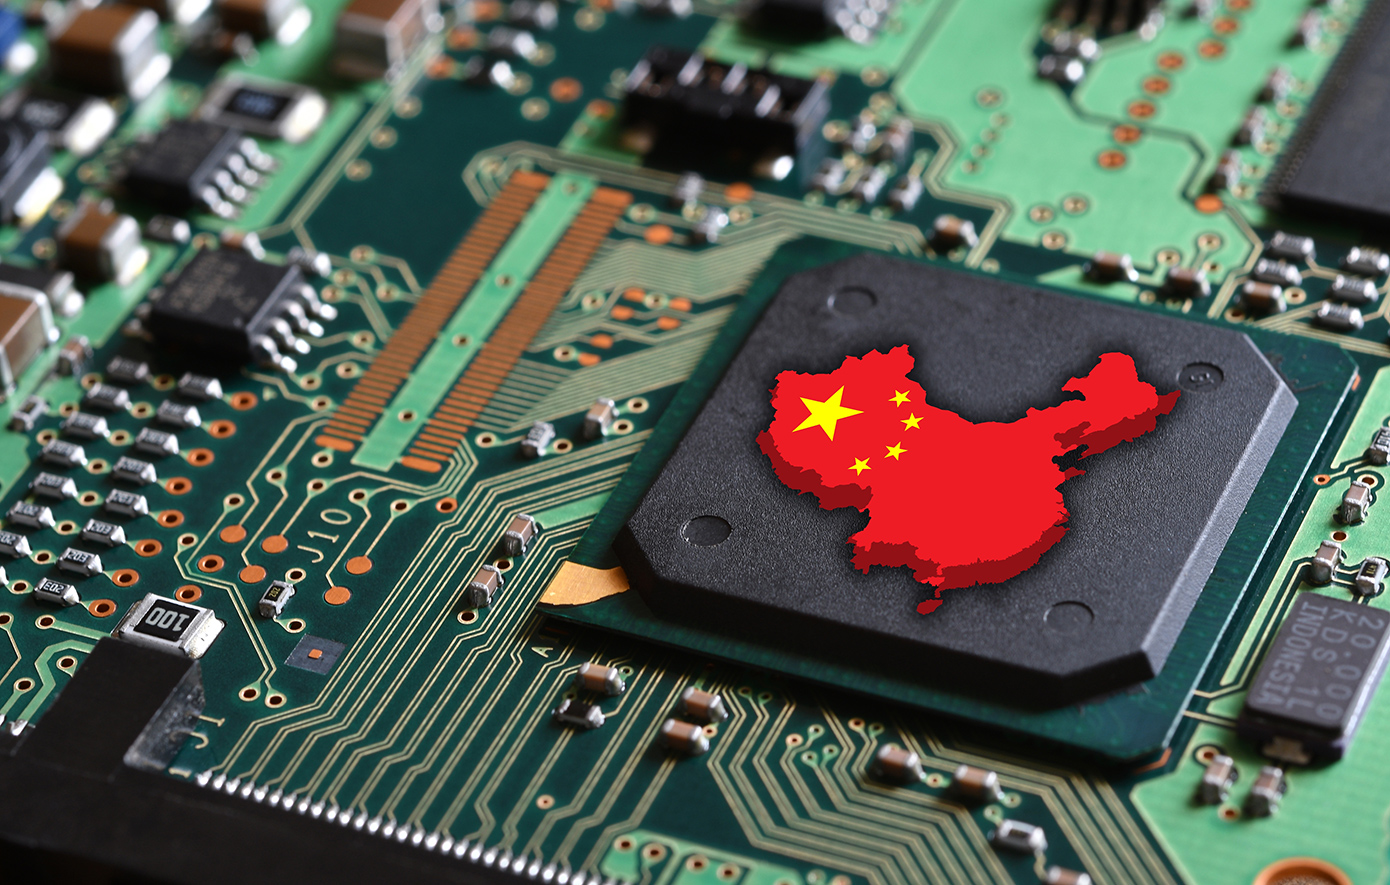 Η άνοδος του ChatCCP &#8211; Tο τρομακτικό σχέδιο της Κίνας για το μέλλον της τεχνητής νοημοσύνης